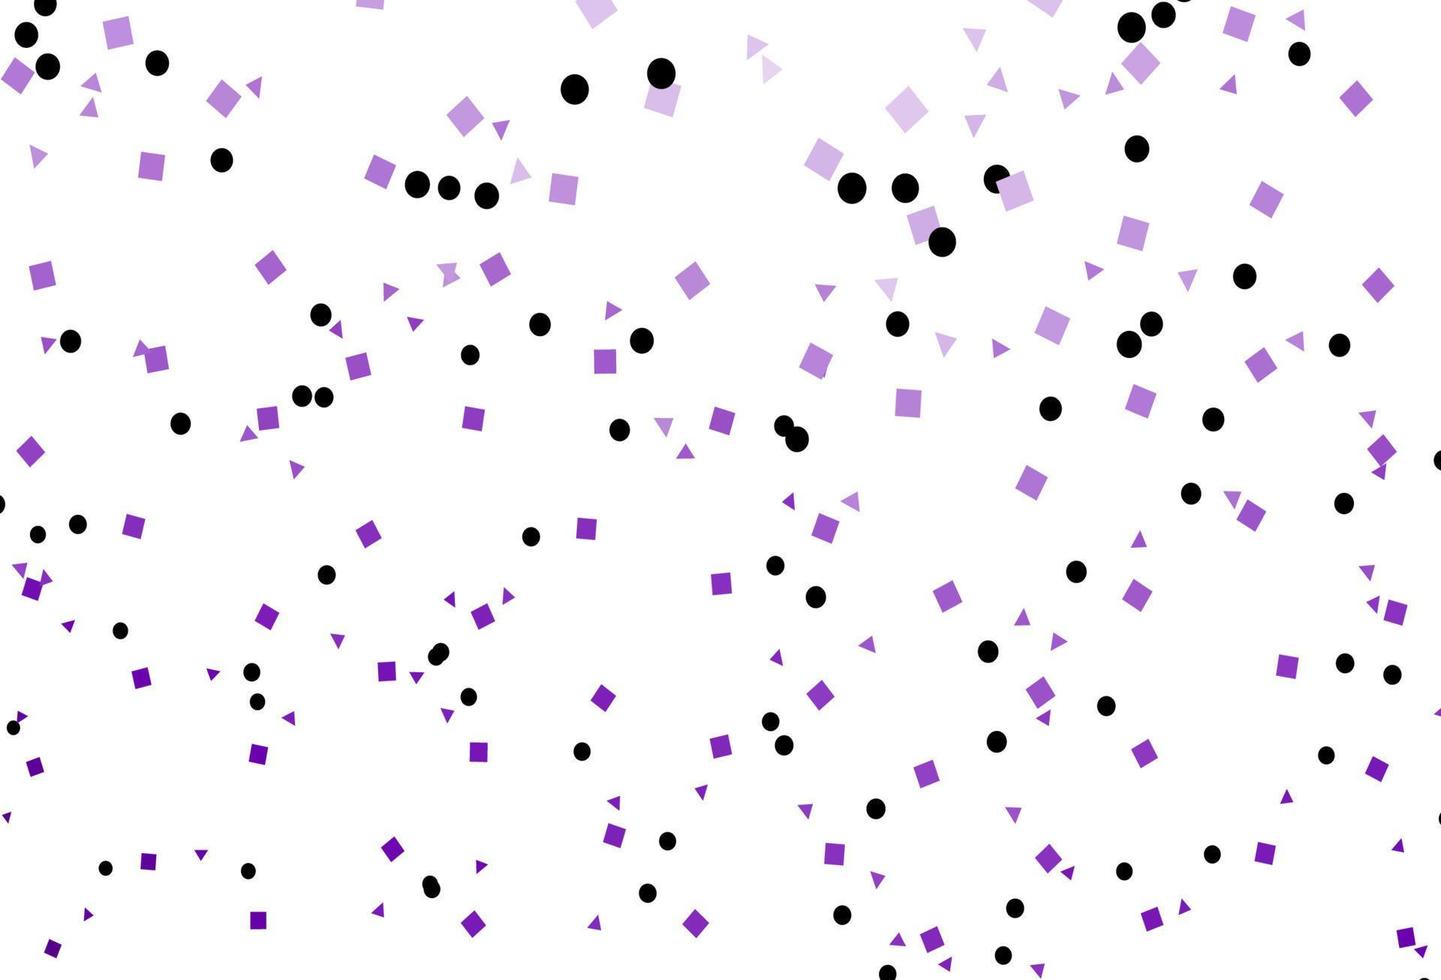 modelo de vetor roxo claro com cristais, círculos, quadrados.